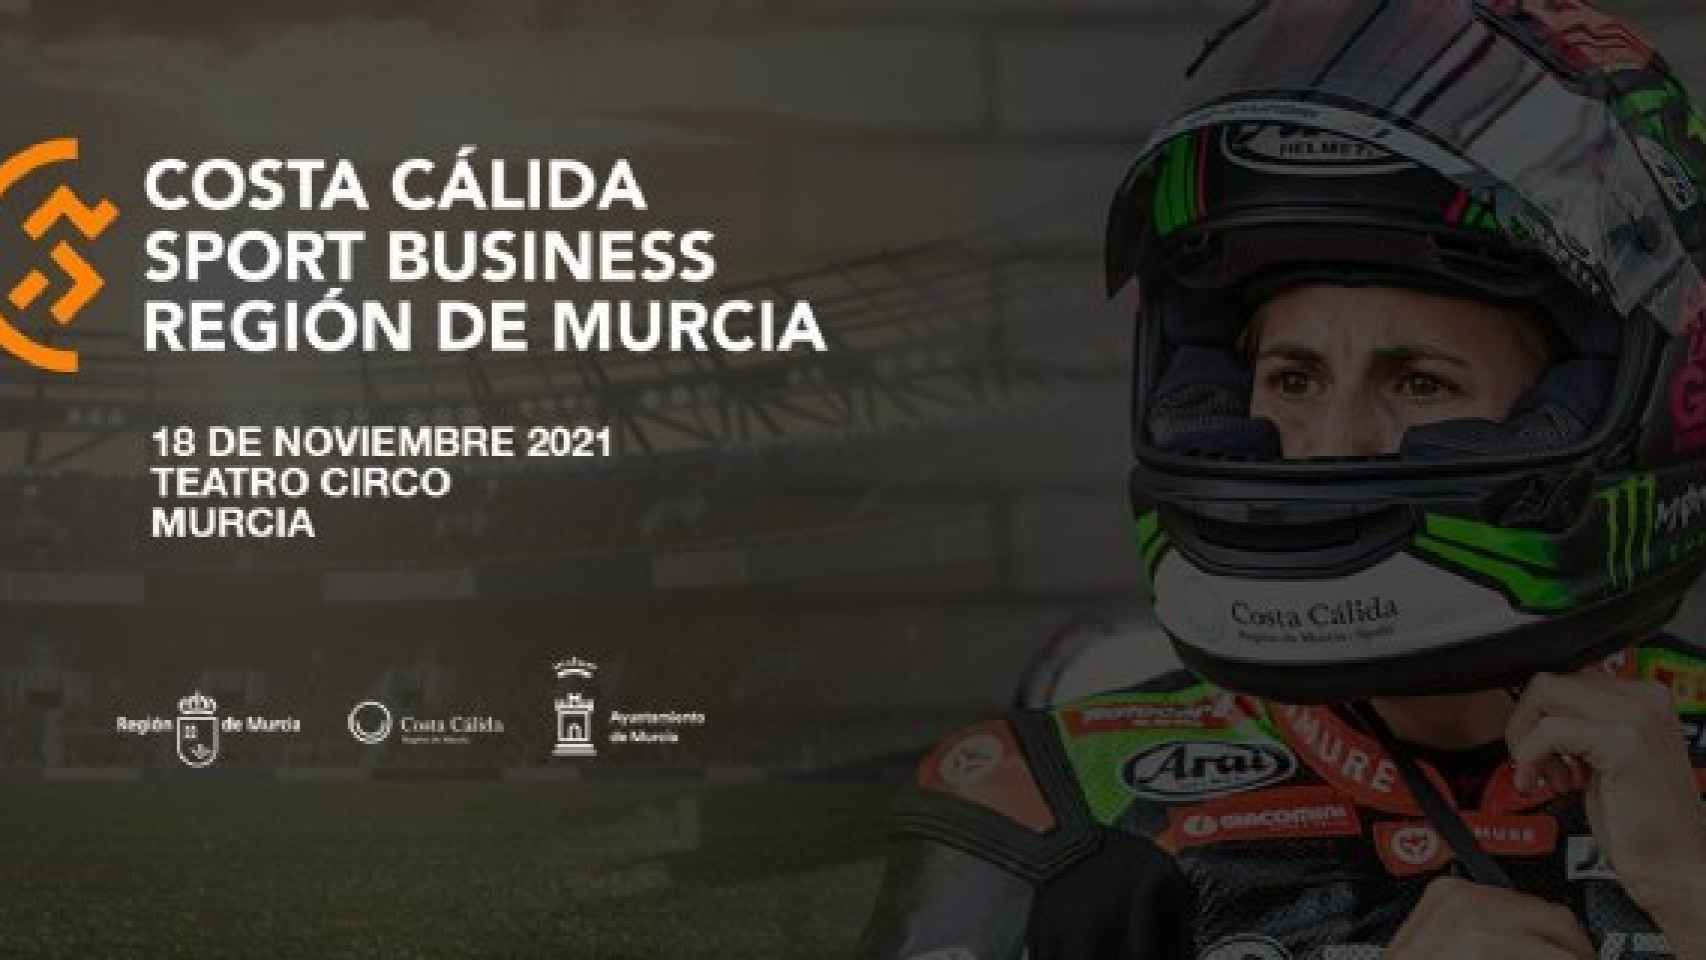 Congreso Costa Cálida Región de Murcia Sport Business.